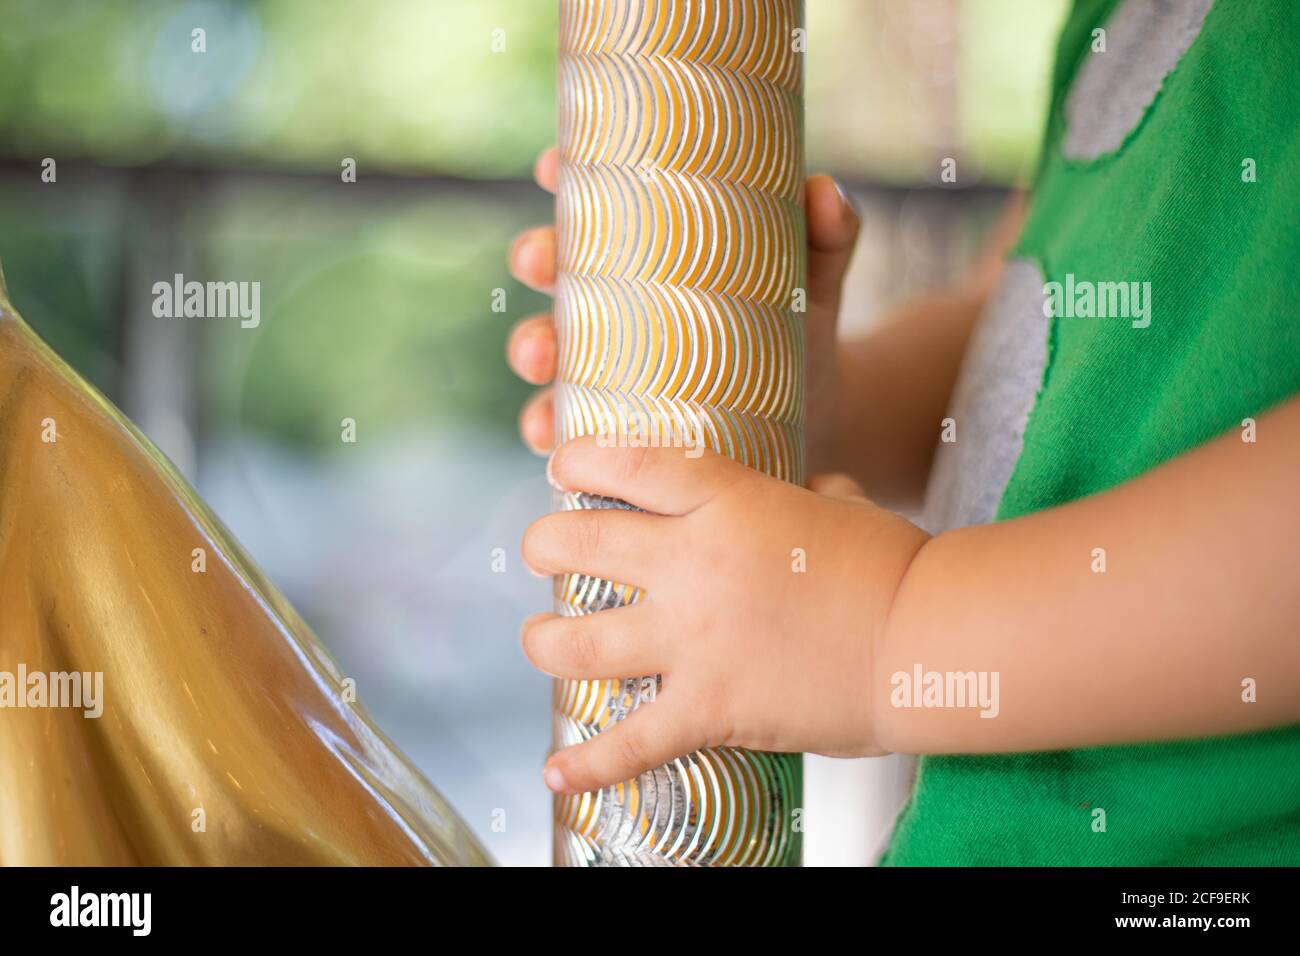 Neugieriges kleines Kind auf bunten beweglichen Karussell auf Messe Stockfoto